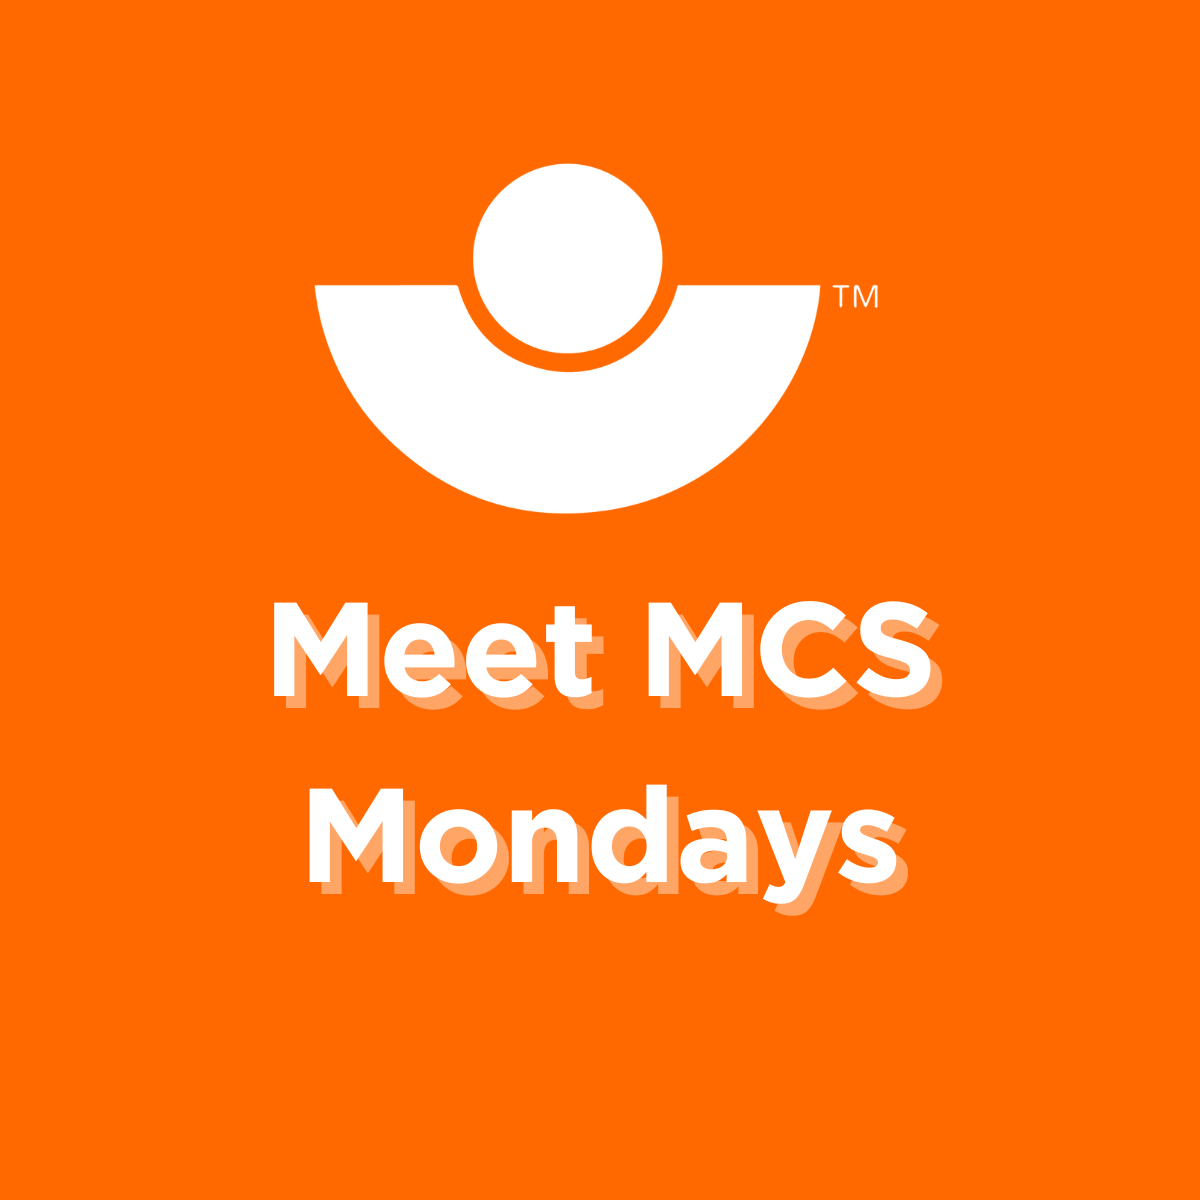 Meet MCS Monday- Introducing Maria McDaid